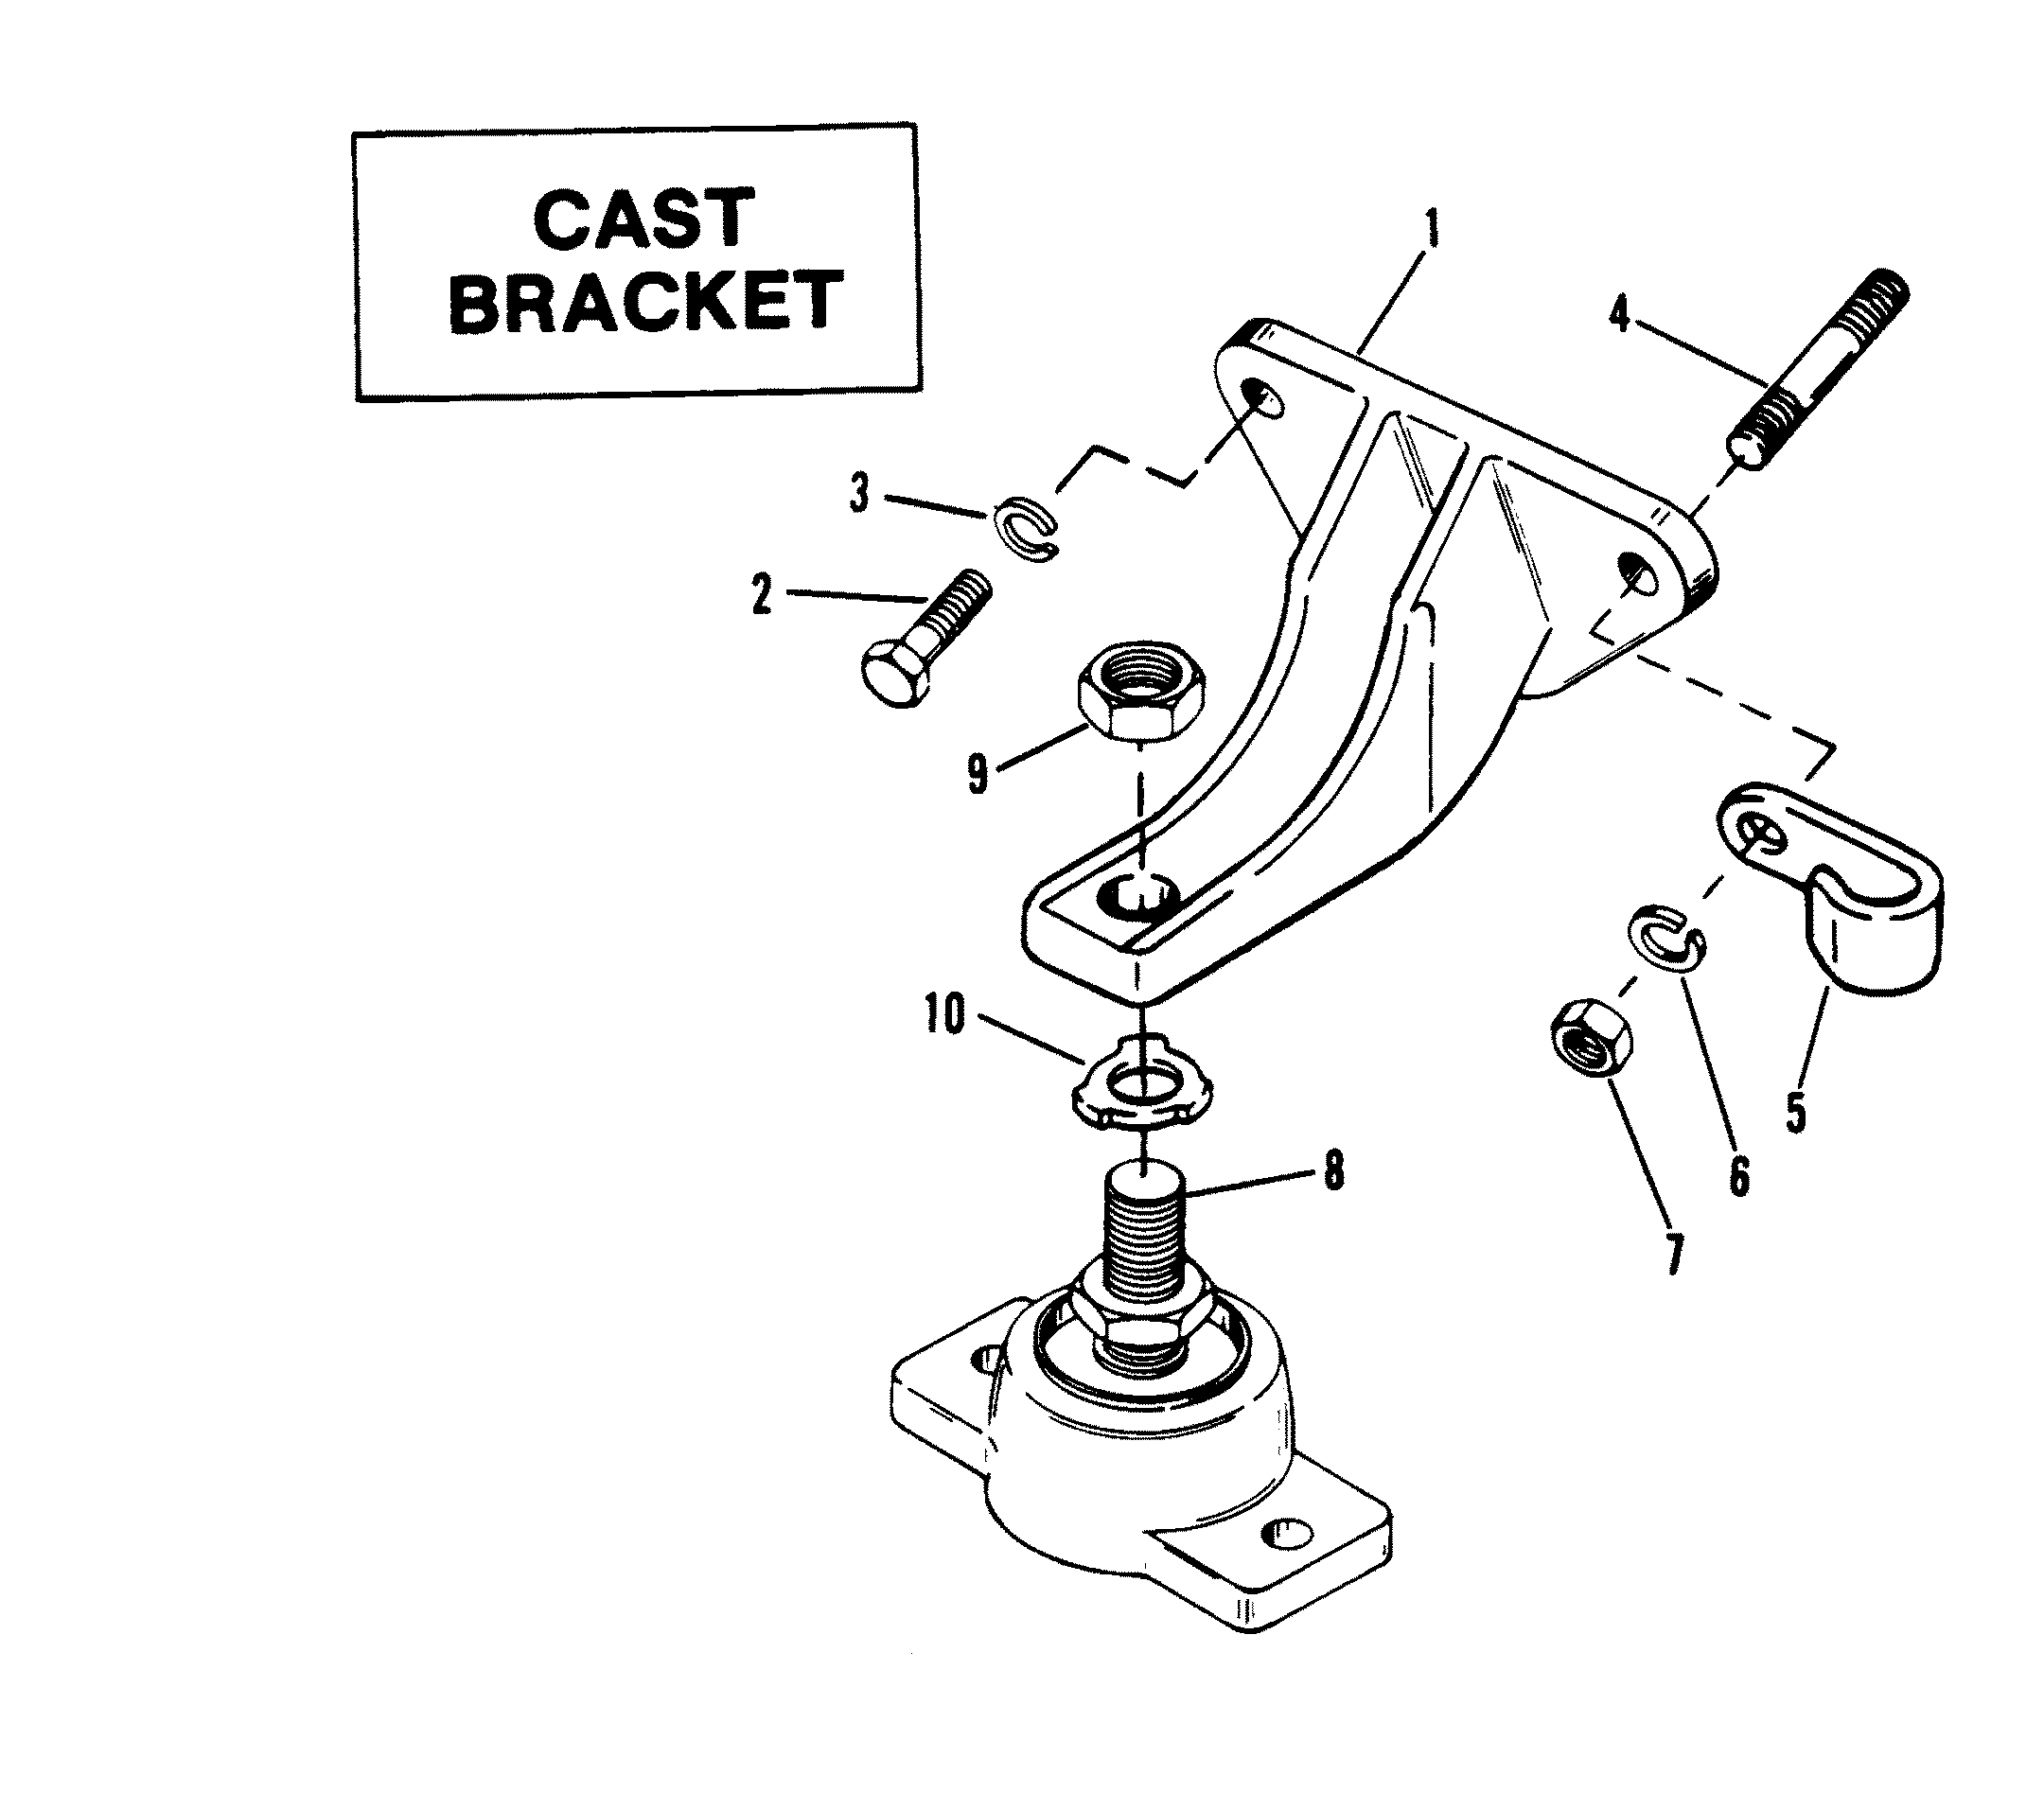 ENGINE MOUNTING (CAST BRACKET)